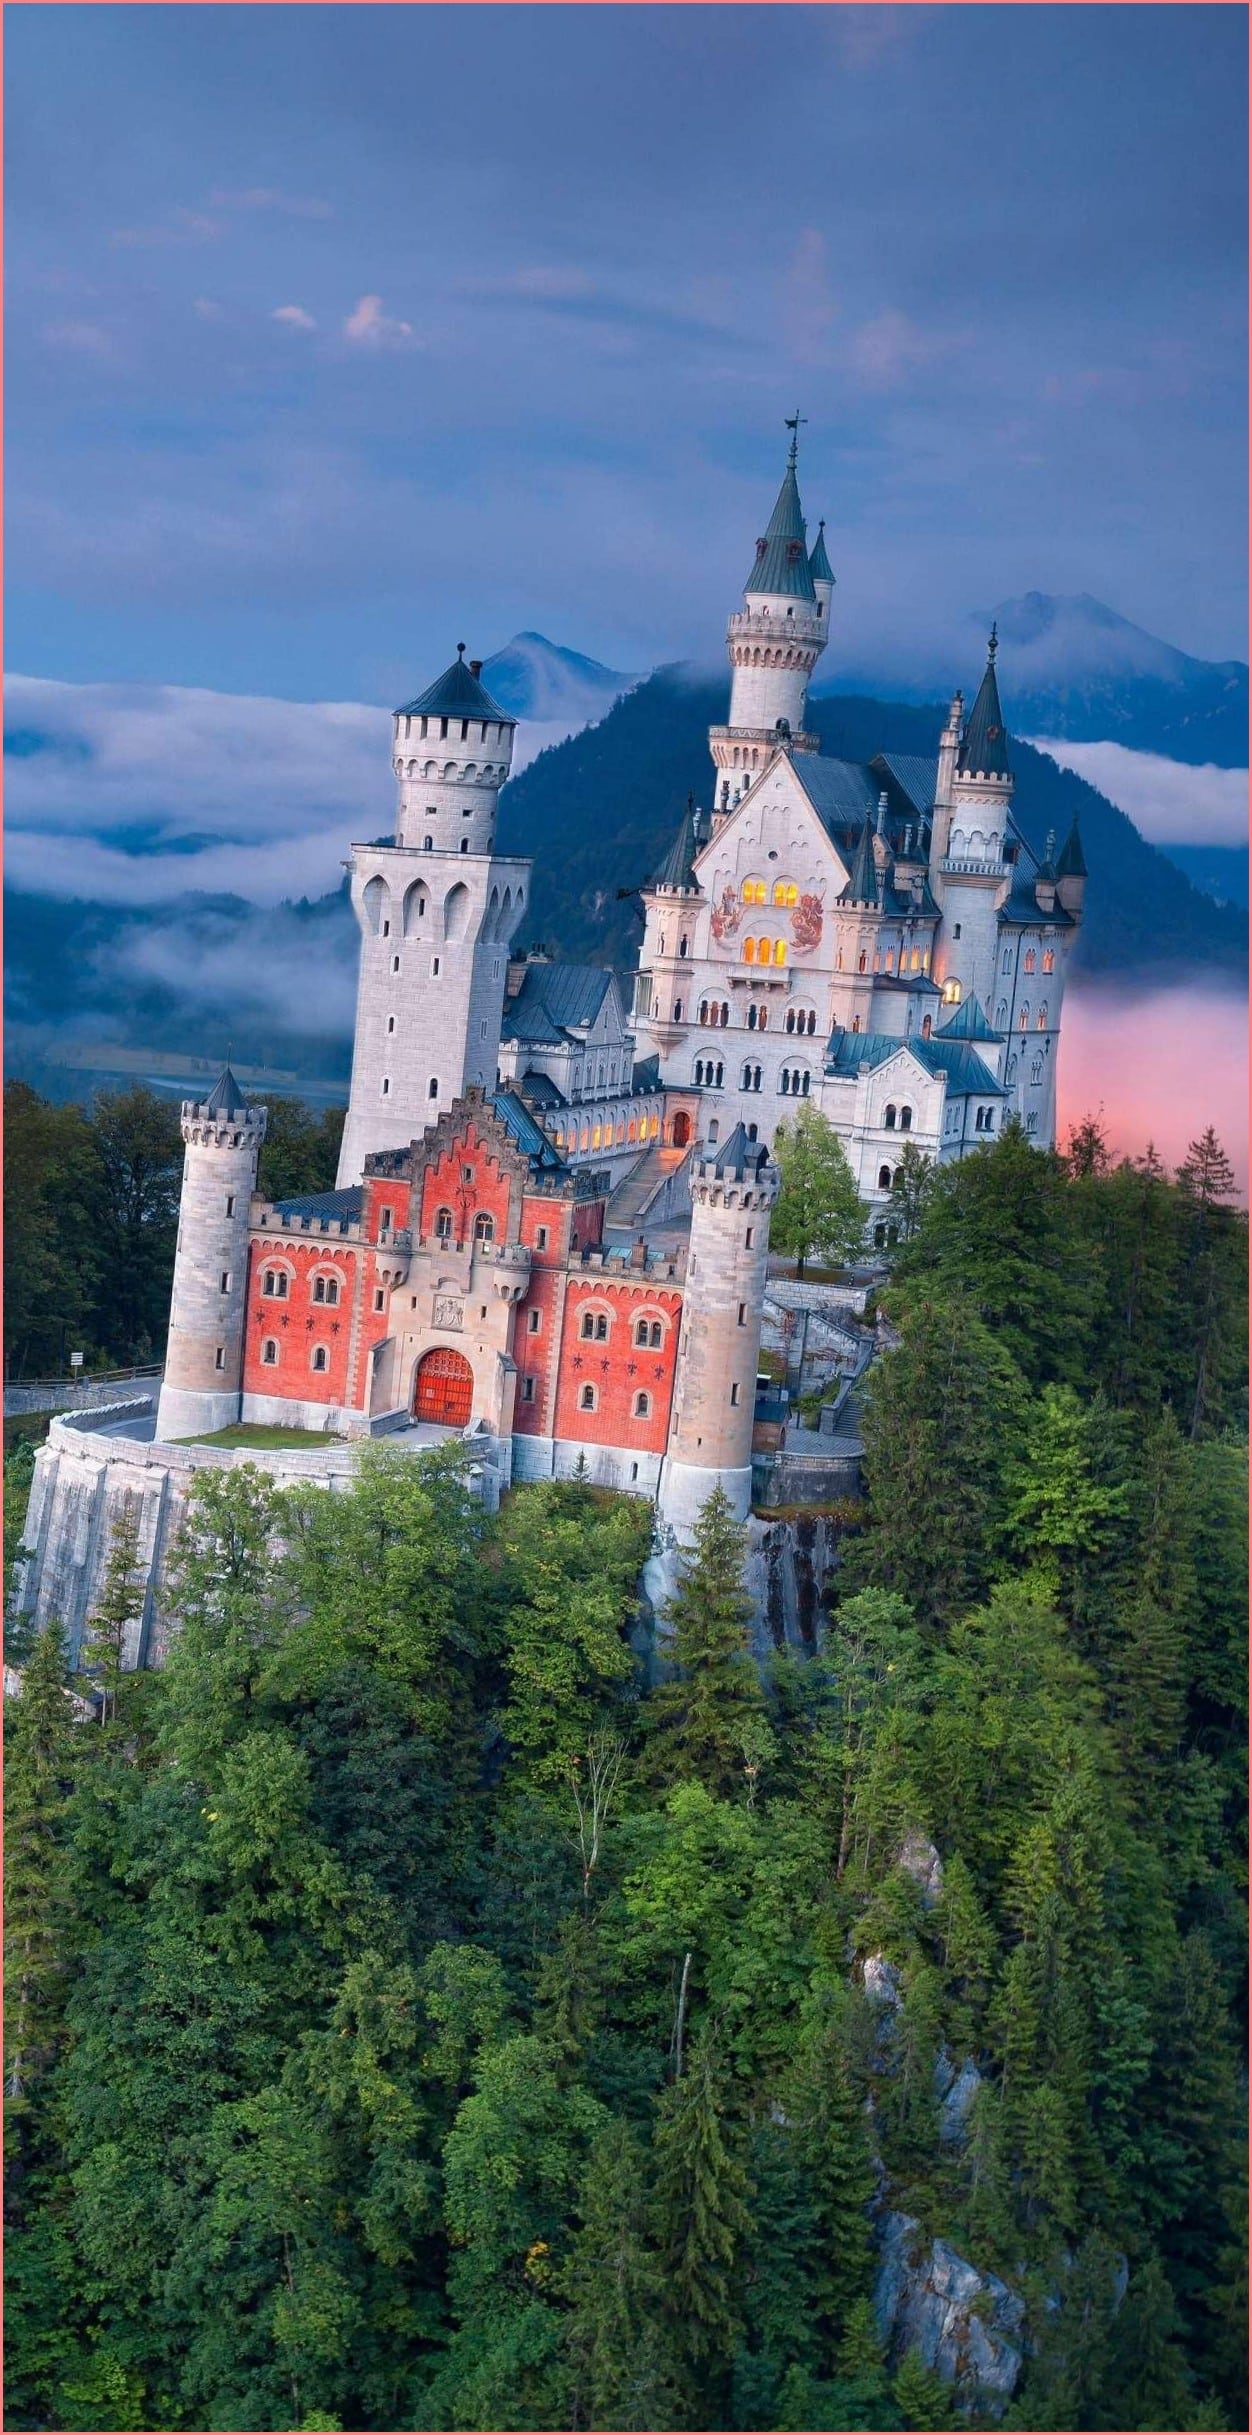 Франконская Швейцария: чем она примечательна и почему её стоит посетить? том, что крепость была сильно